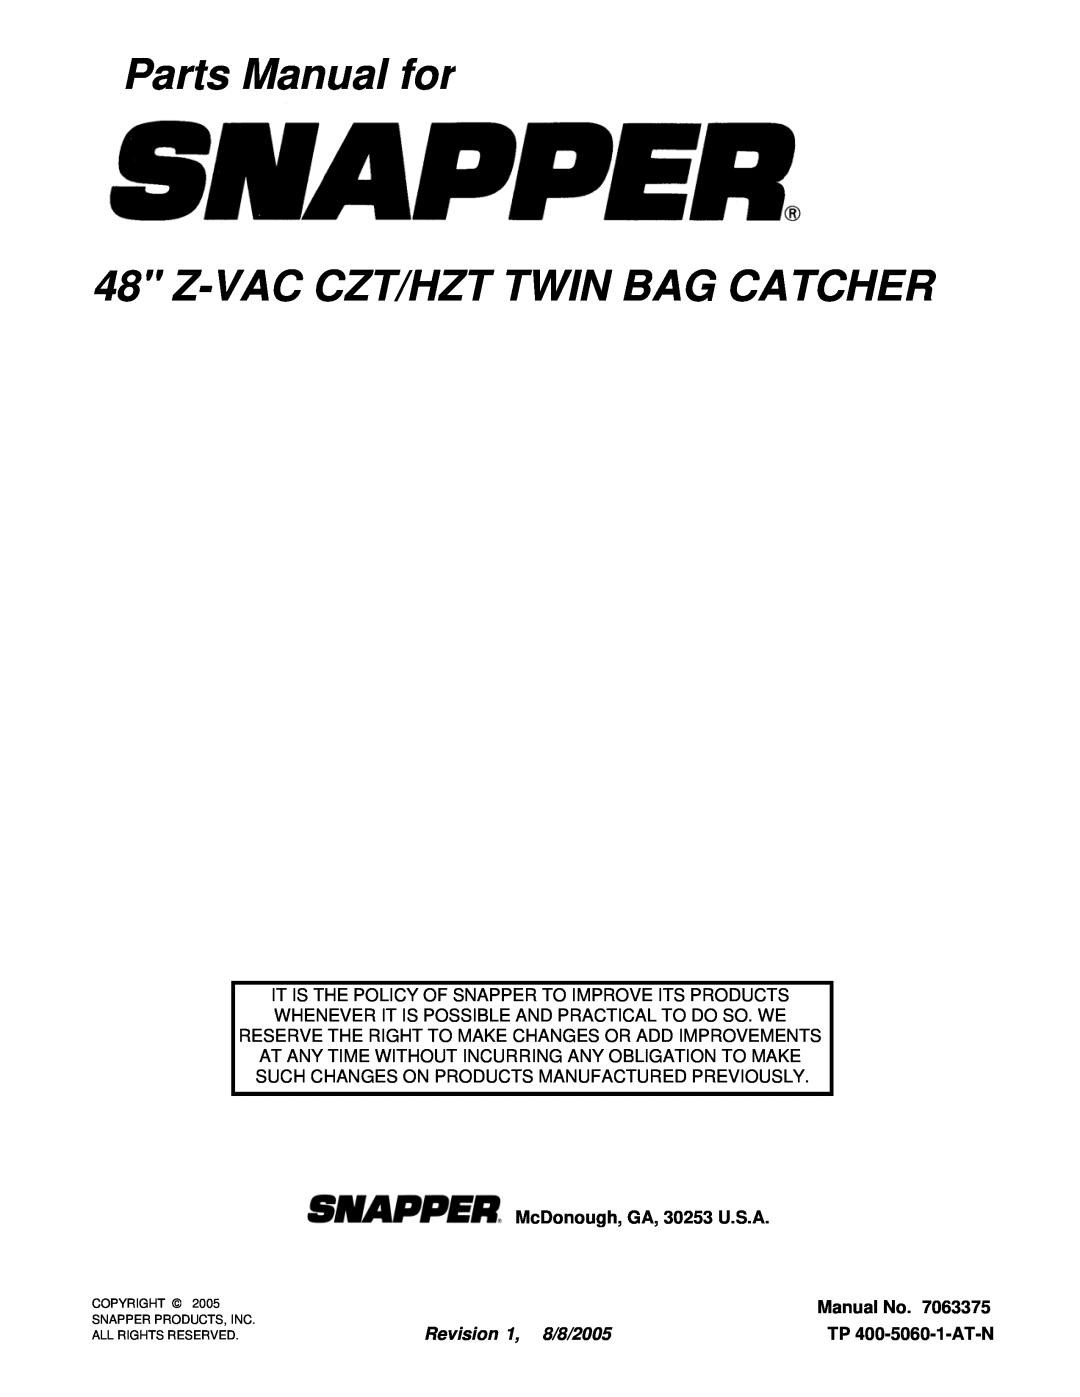 Snapper 7063375 manual Parts Manual for 48 Z-VAC CZT/HZT TWIN BAG CATCHER, McDonough, GA, 30253 U.S.A, Manual No 